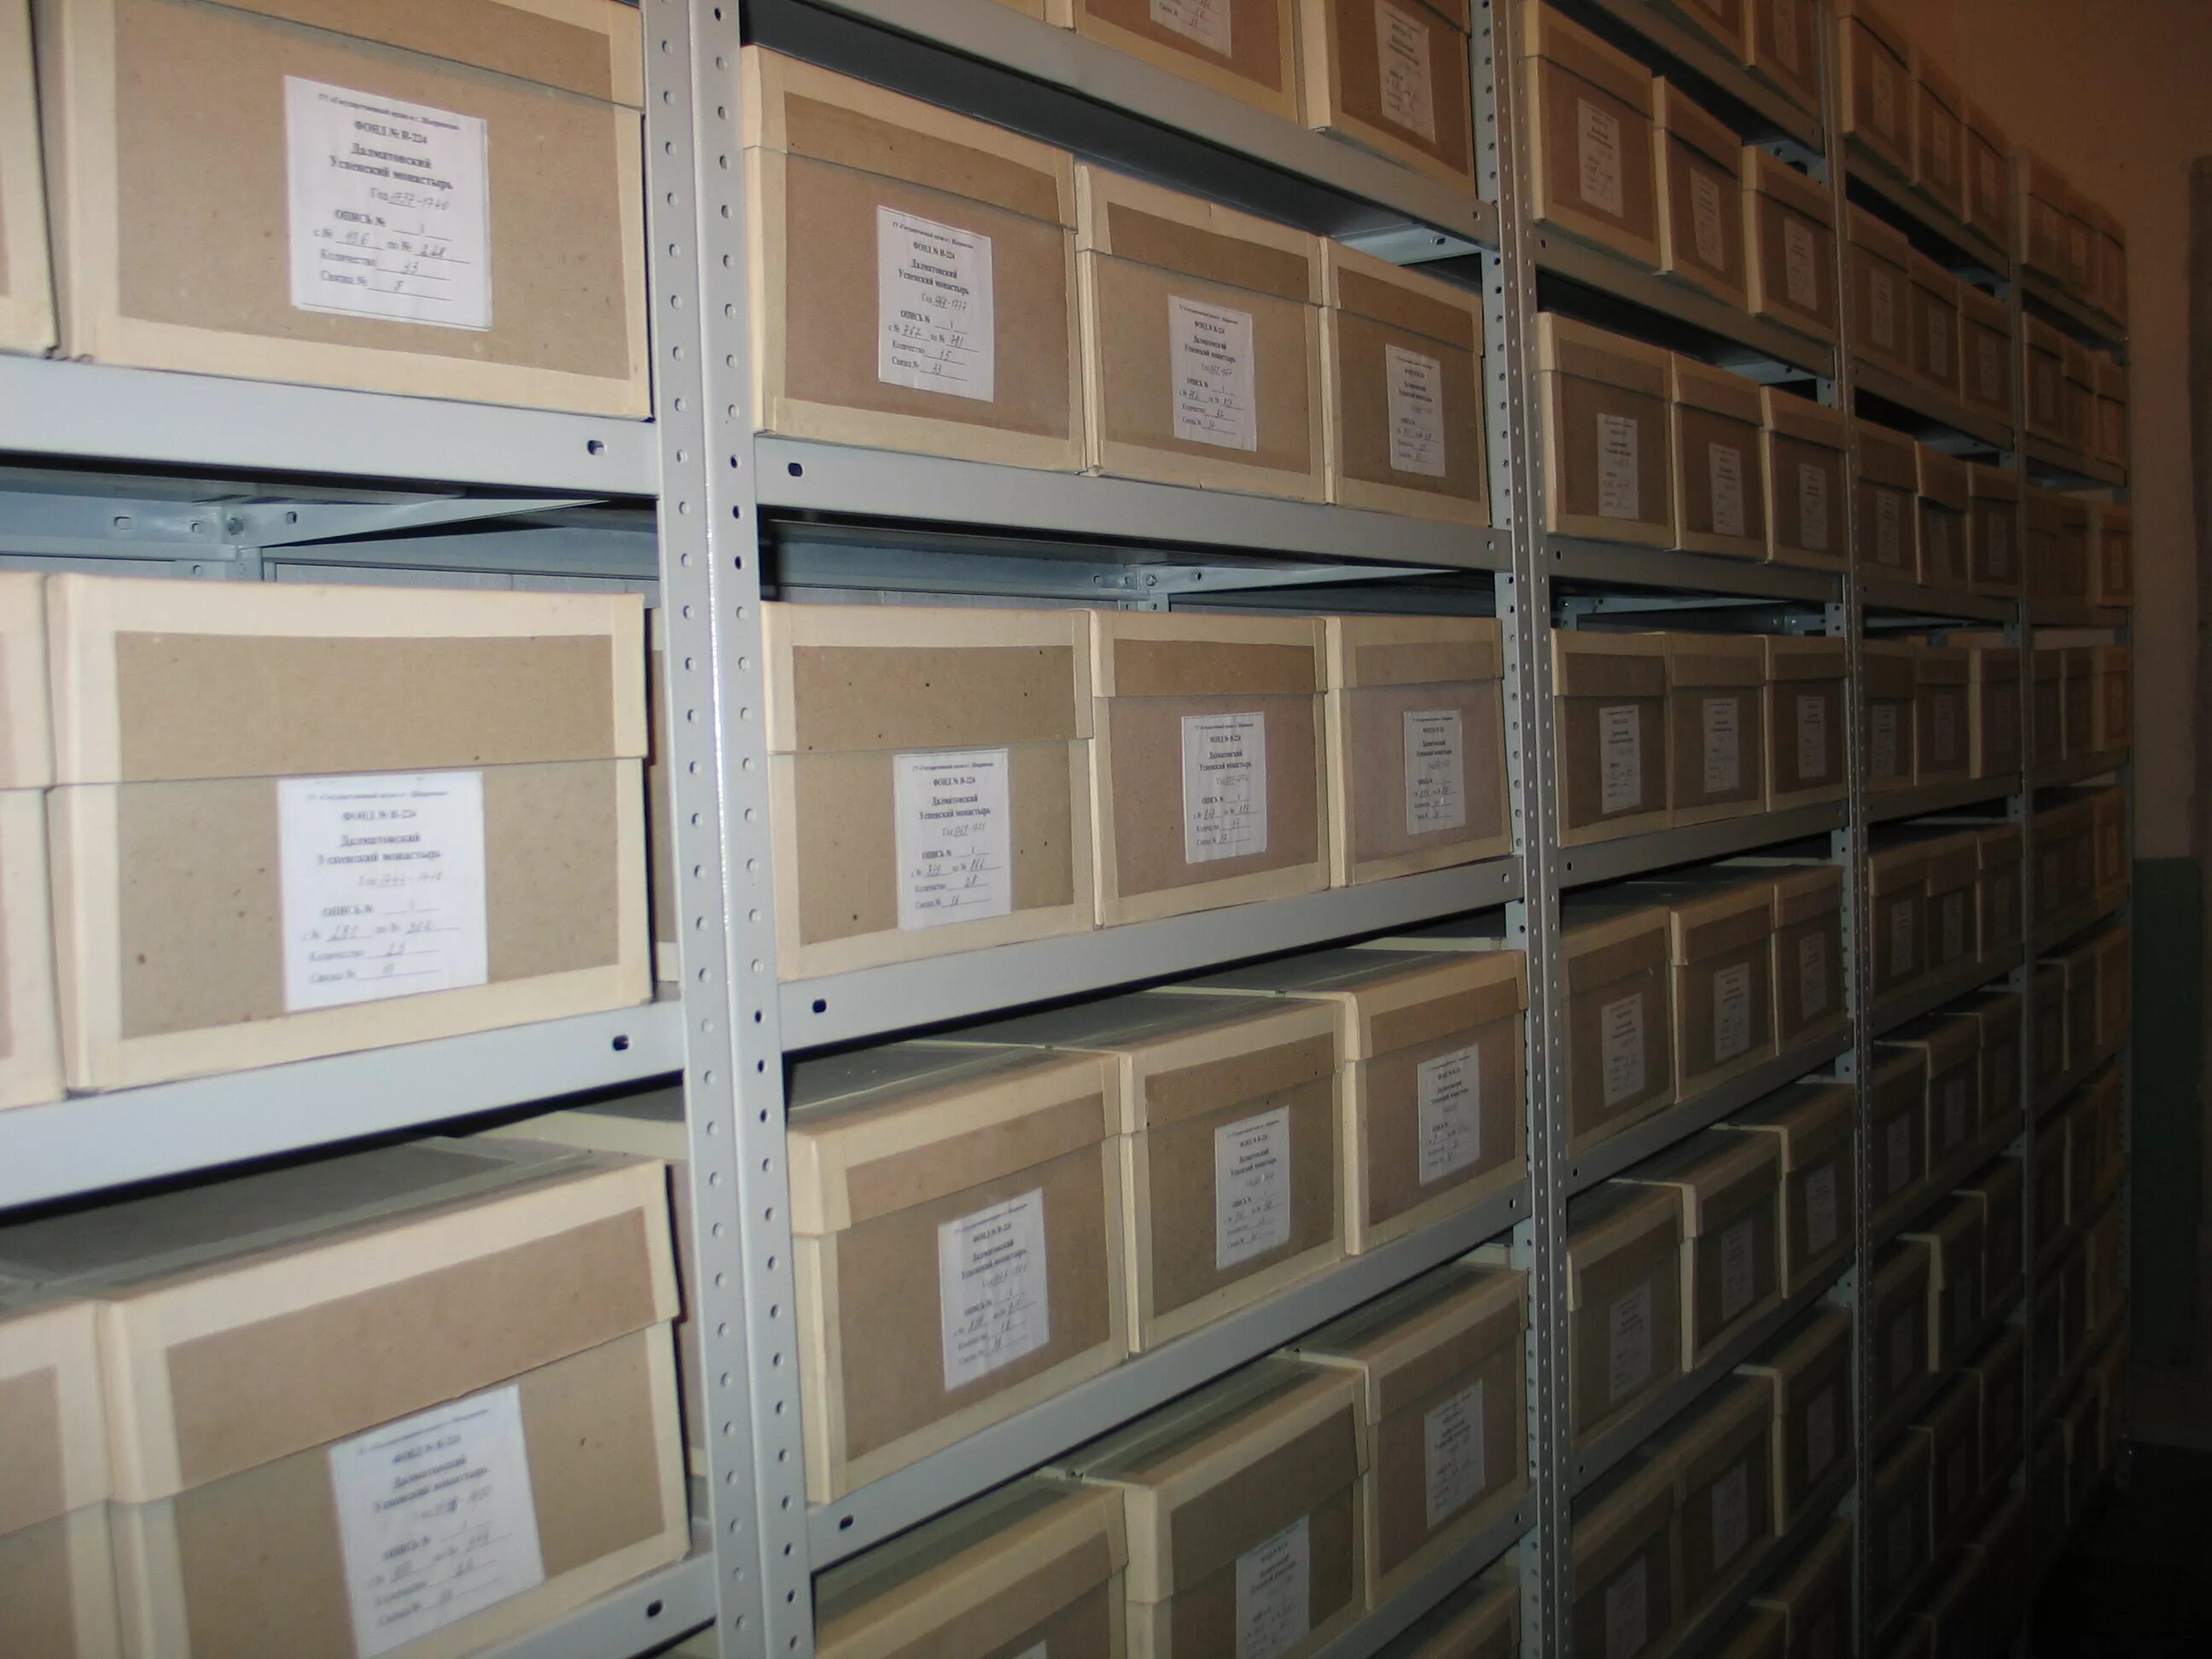 Архивное хранение дел. Хранение документов в архиве. Архивный стеллаж с ящиками. Архивные документы в коробках.